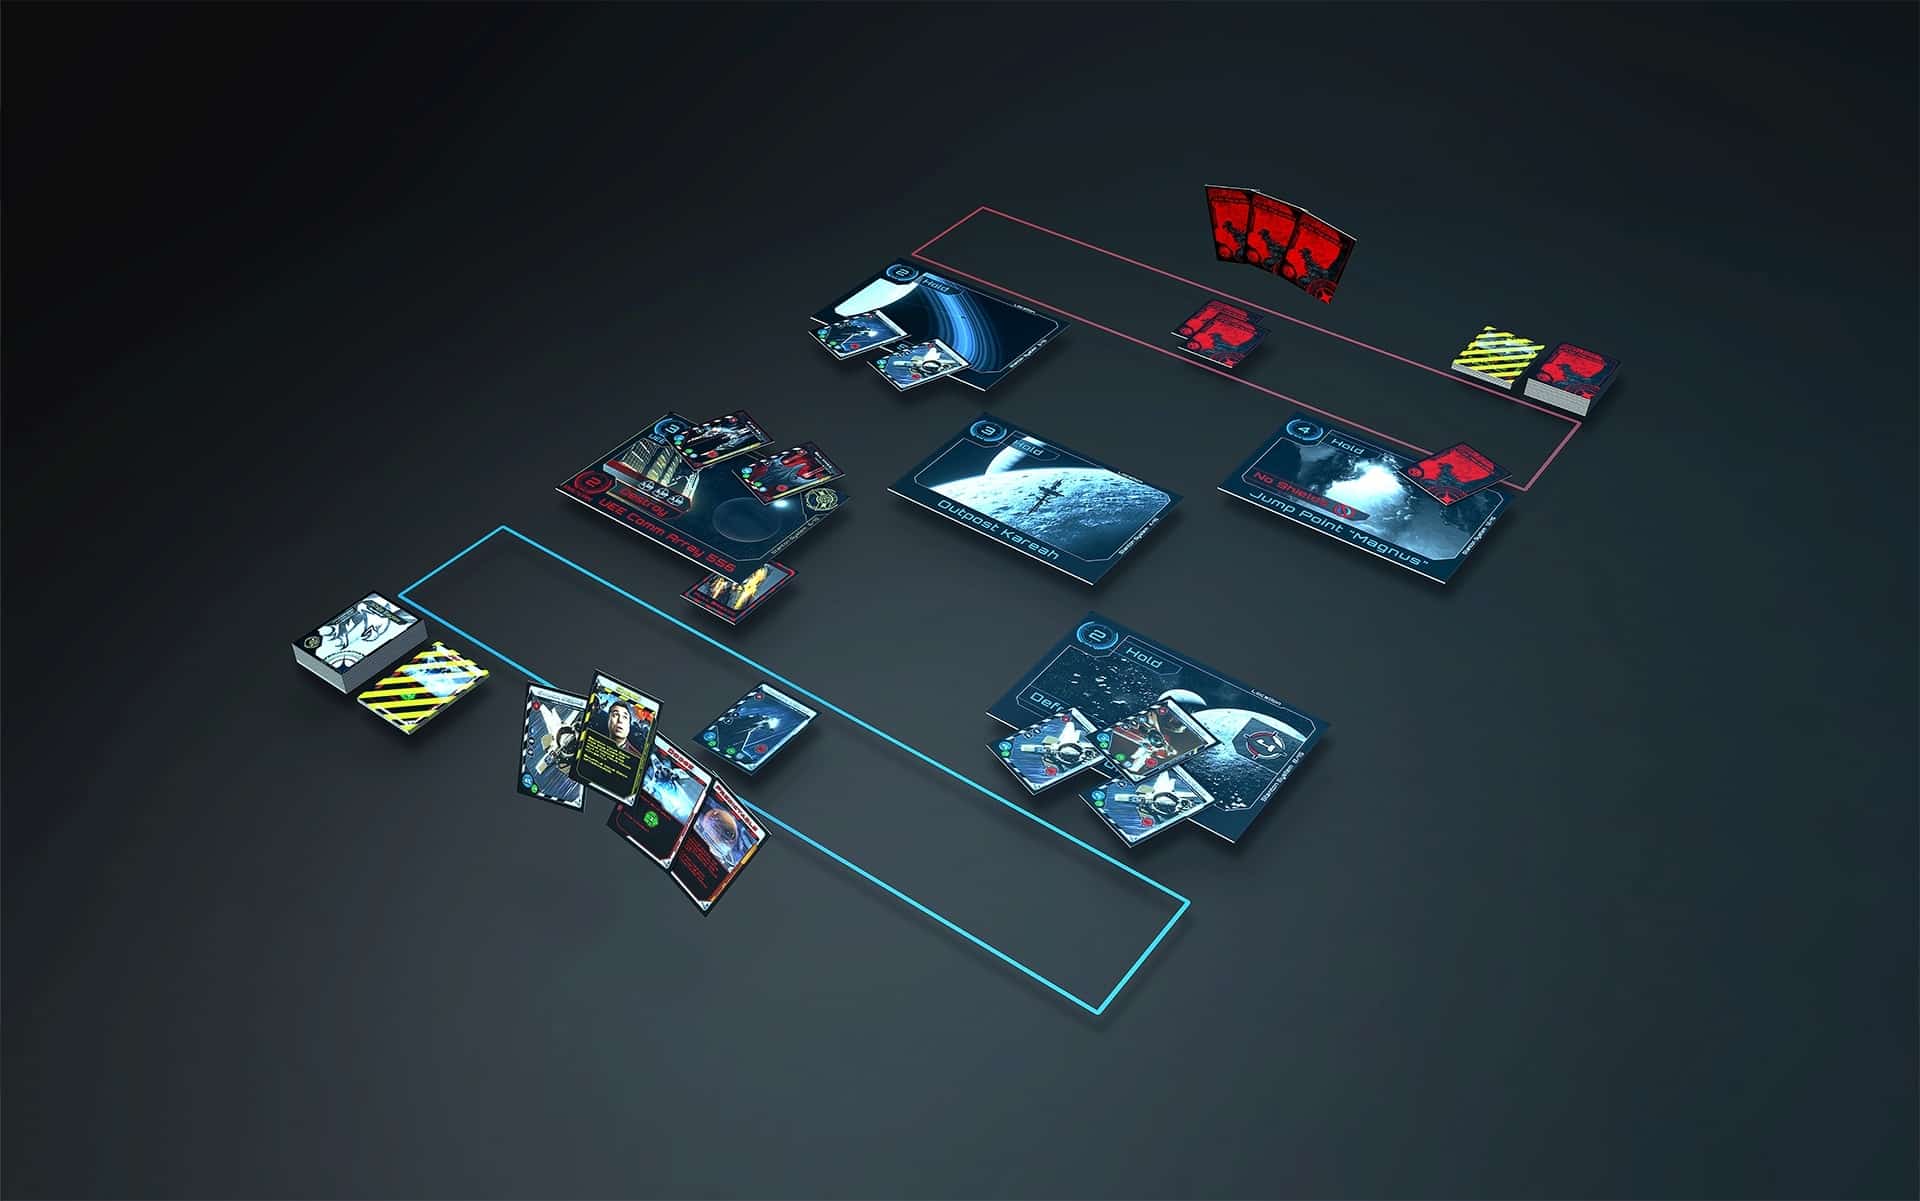 (Tak mniej więcej wygląda pole gry w Eskadrach: Na środku znajduje się pięć kart lokacji, o które toczy się walka. Gracze umieszczają swoje statki kosmiczne i karty akcji, na początku zakryte, potem następuje bitwa z dodatkowymi kartami akcji).